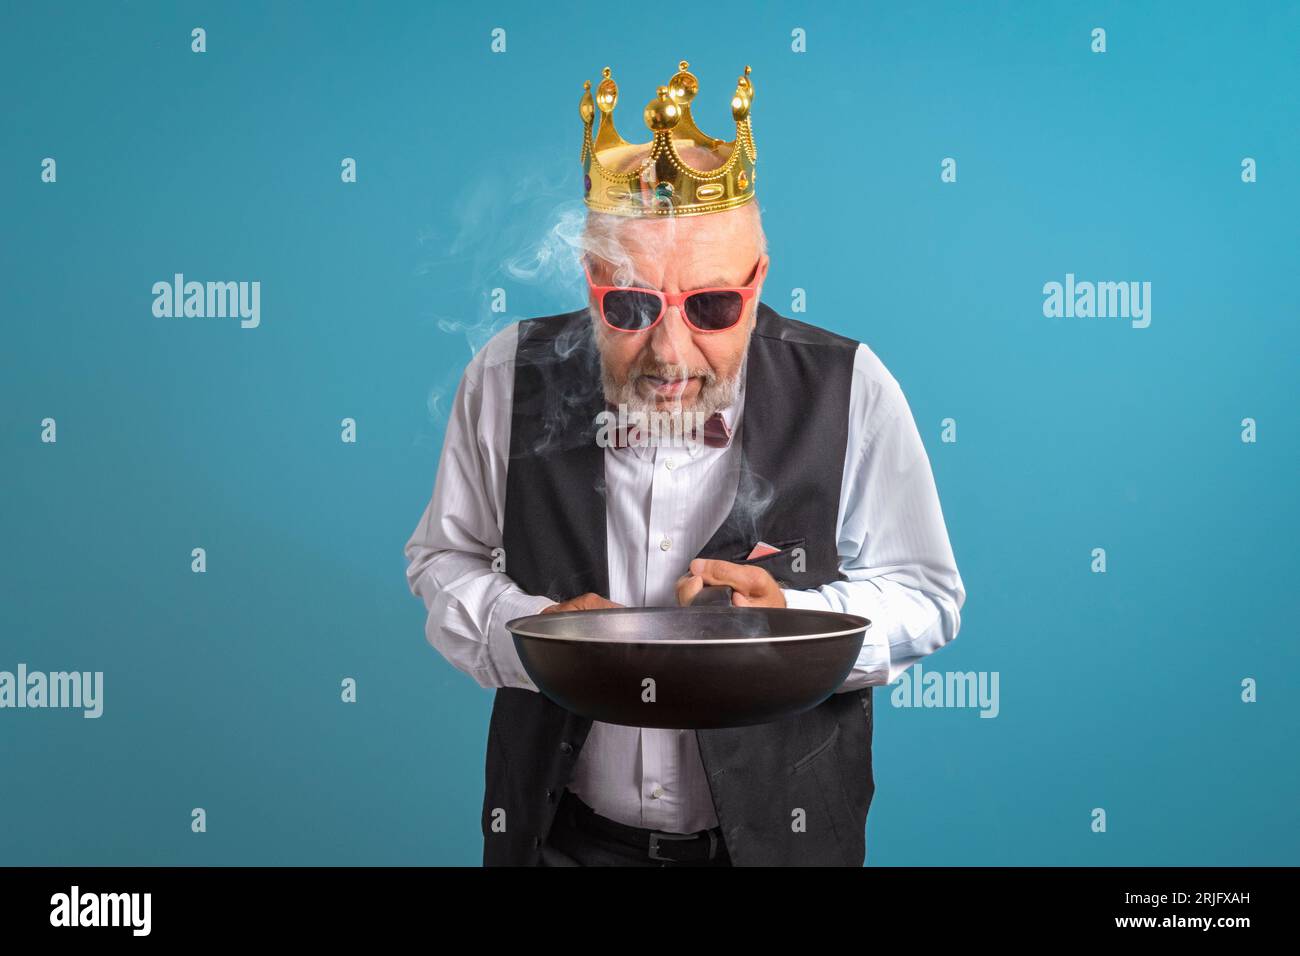 Roi de la cuisine. Un homme en couronne d'or avec une poêle brûlée à la main. Sur fond bleu Banque D'Images